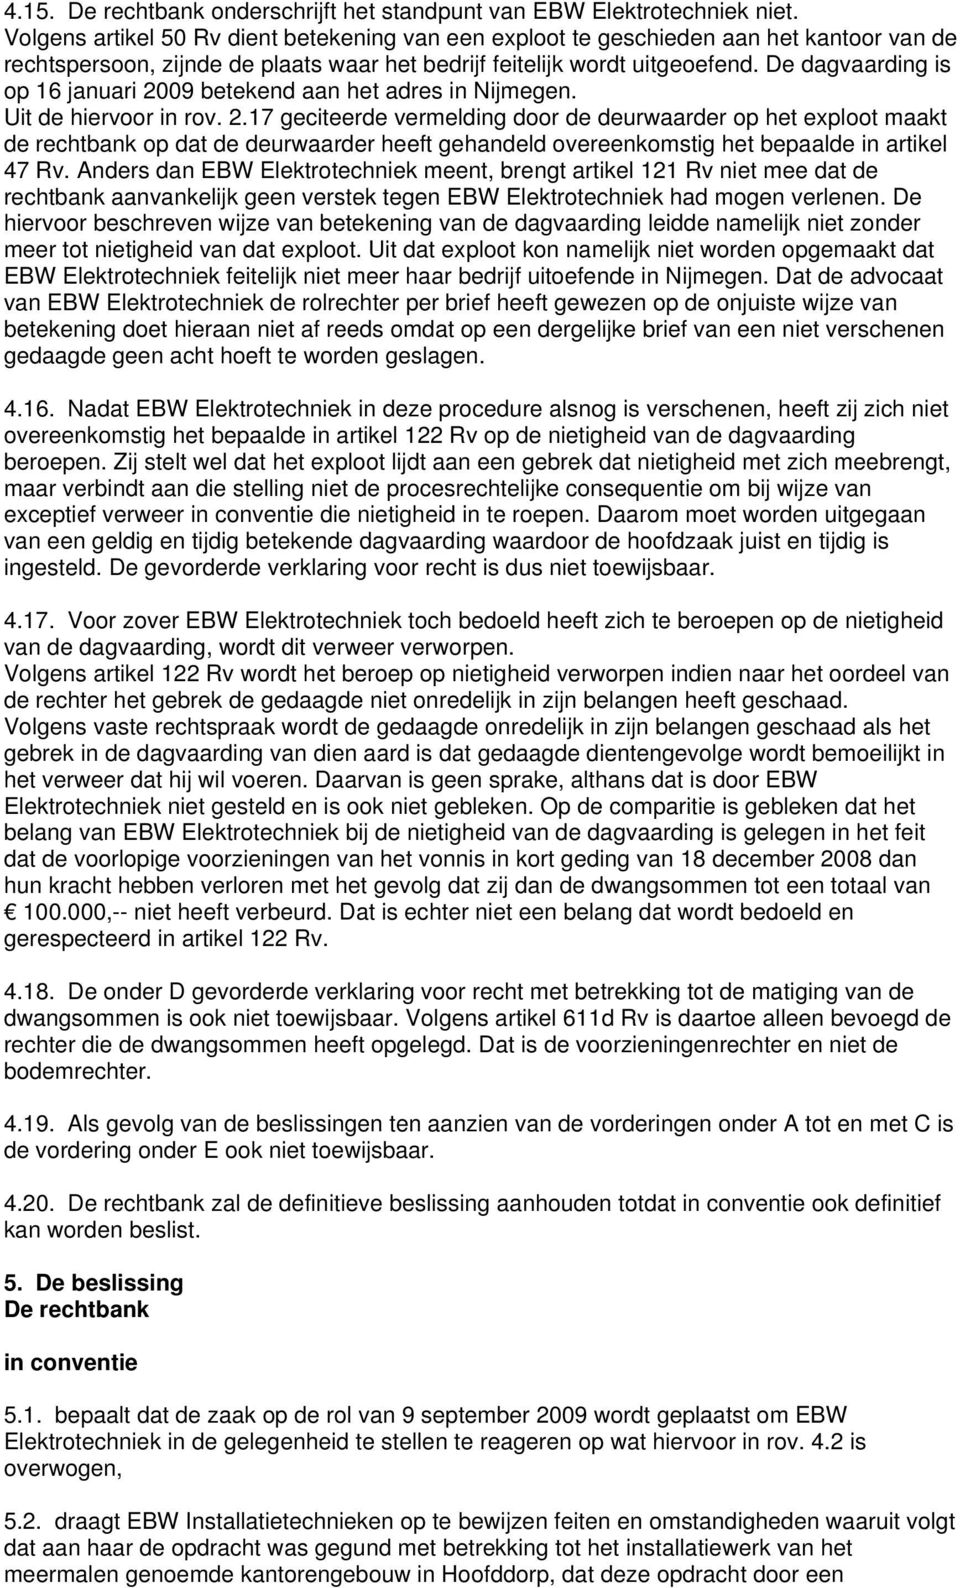 De dagvaarding is op 16 januari 2009 betekend aan het adres in Nijmegen. Uit de hiervoor in rov. 2.17 geciteerde vermelding door de deurwaarder op het exploot maakt de rechtbank op dat de deurwaarder heeft gehandeld overeenkomstig het bepaalde in artikel 47 Rv.